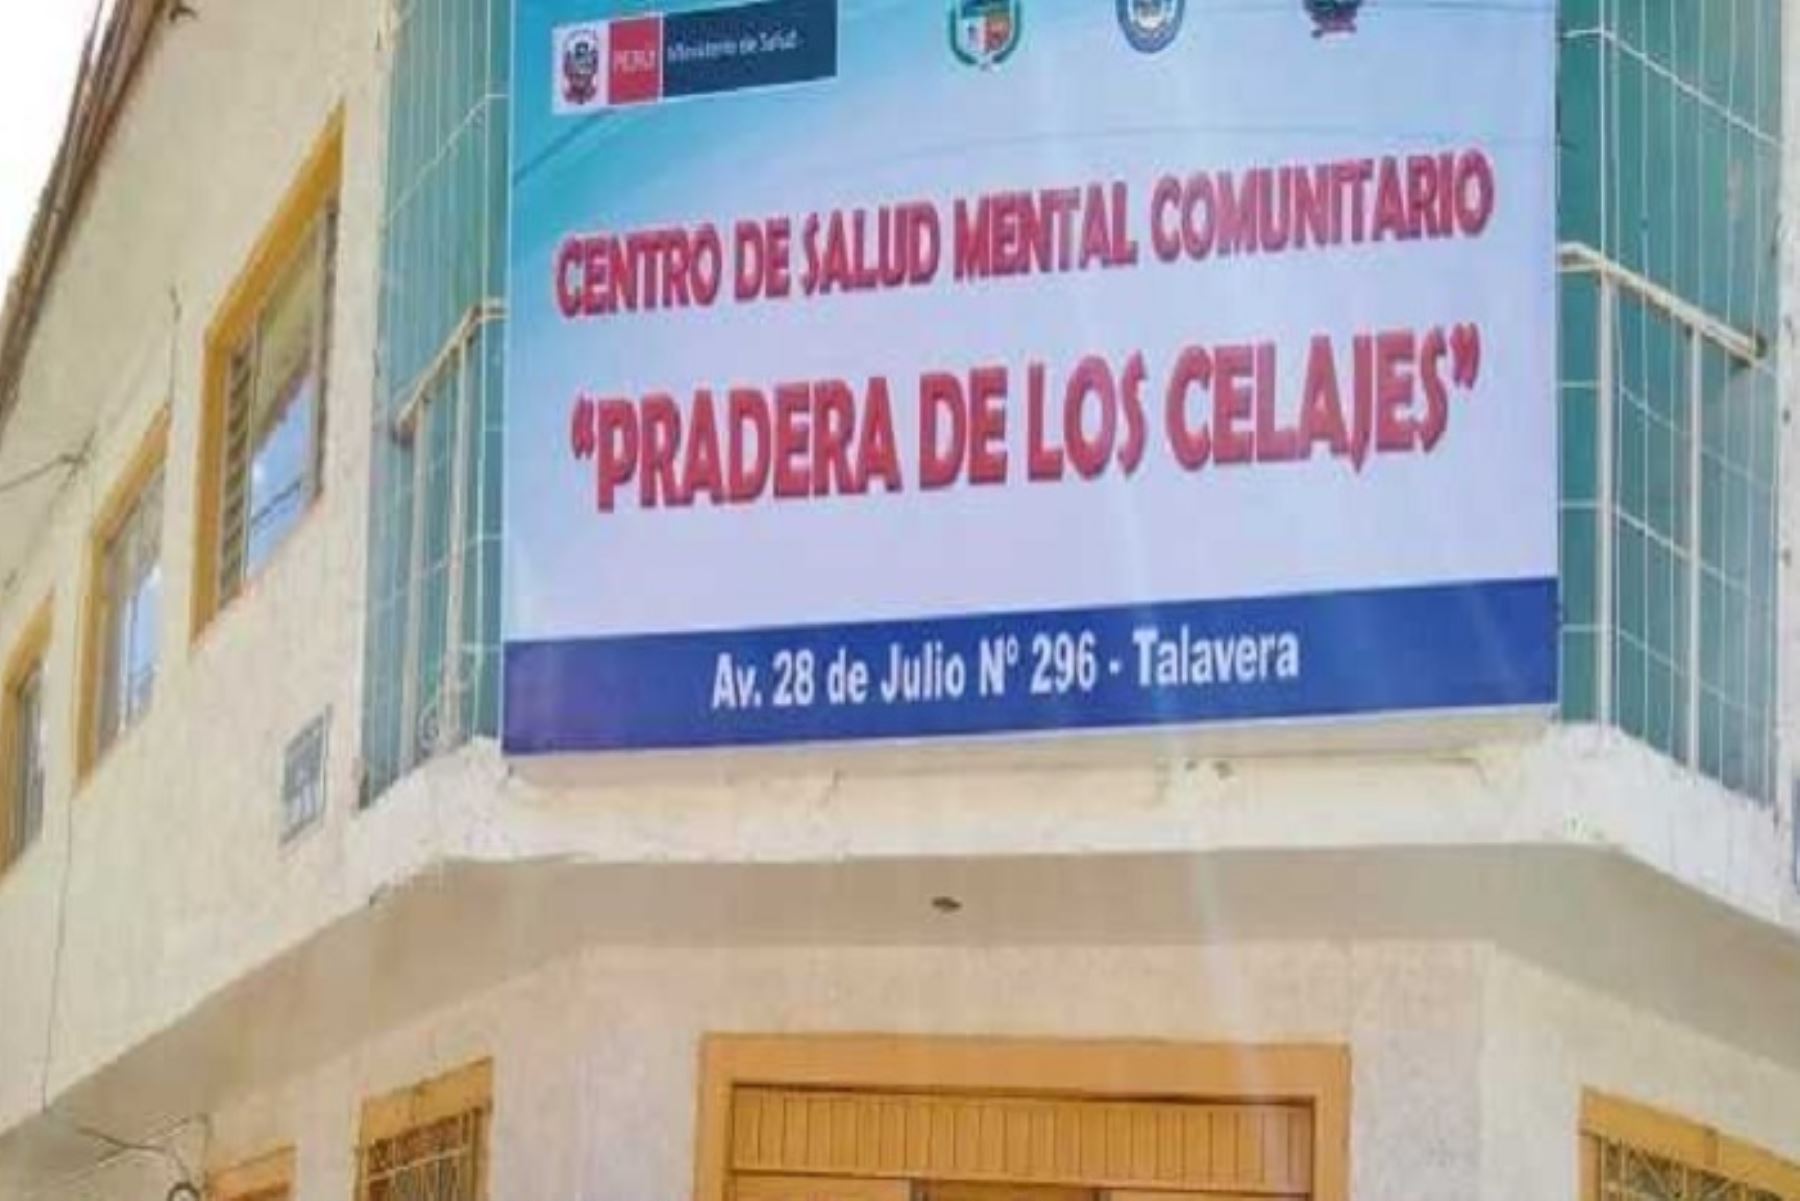 Arequipa cuenta con 10 centros de salud mental comunitarios para atender a la población.Foto:  ANDINA/Archivo